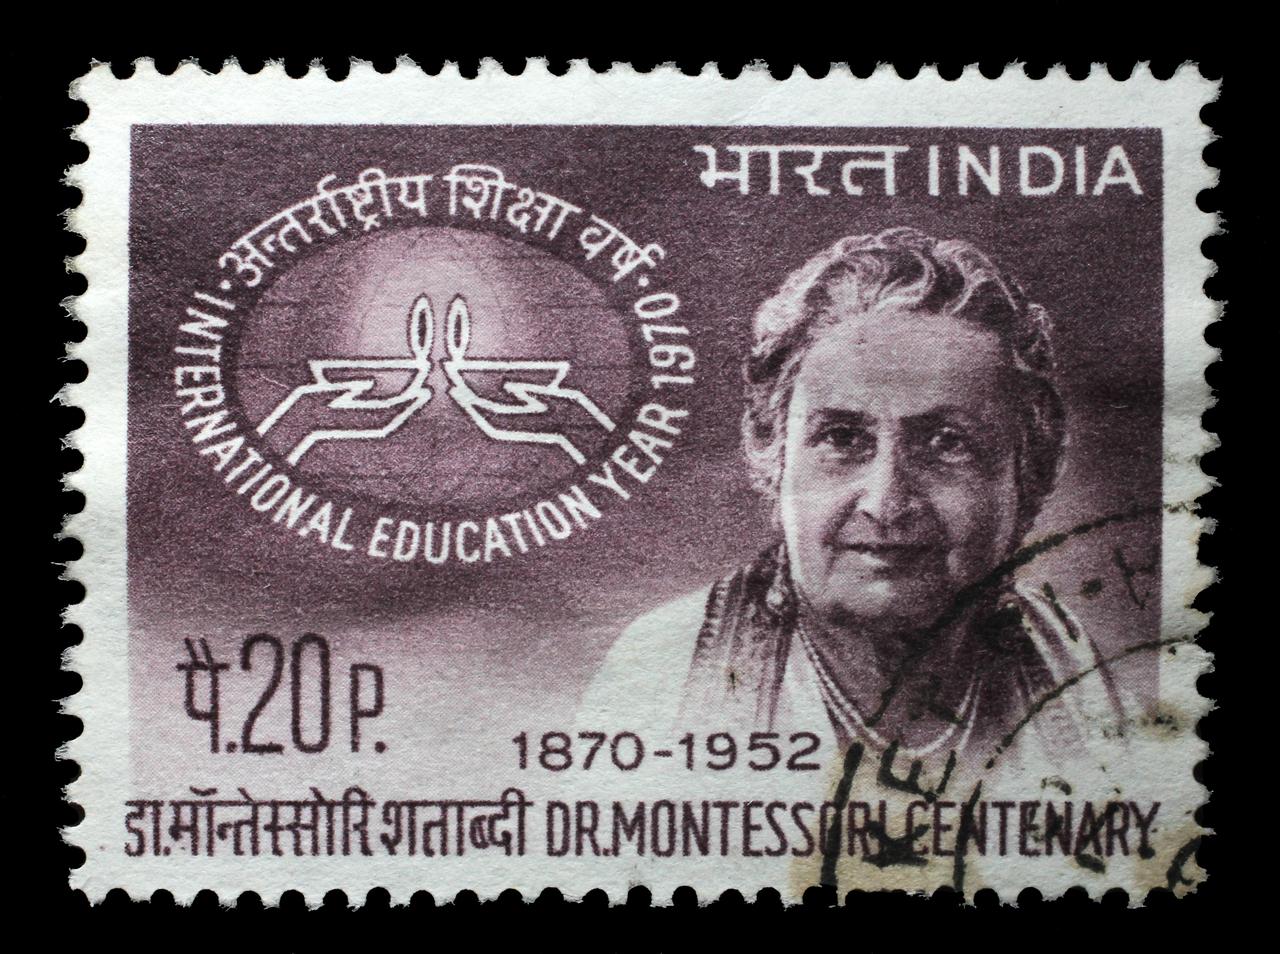 Zu ihrem 100. Geburtstag wurde Maria Montessori zu Ehren in Indien eine Briefmarke gedruckt. Auf dem Subkontinent verbrachte sie zwischen 1939 und 1949 zehn Jahre ihres Lebens.